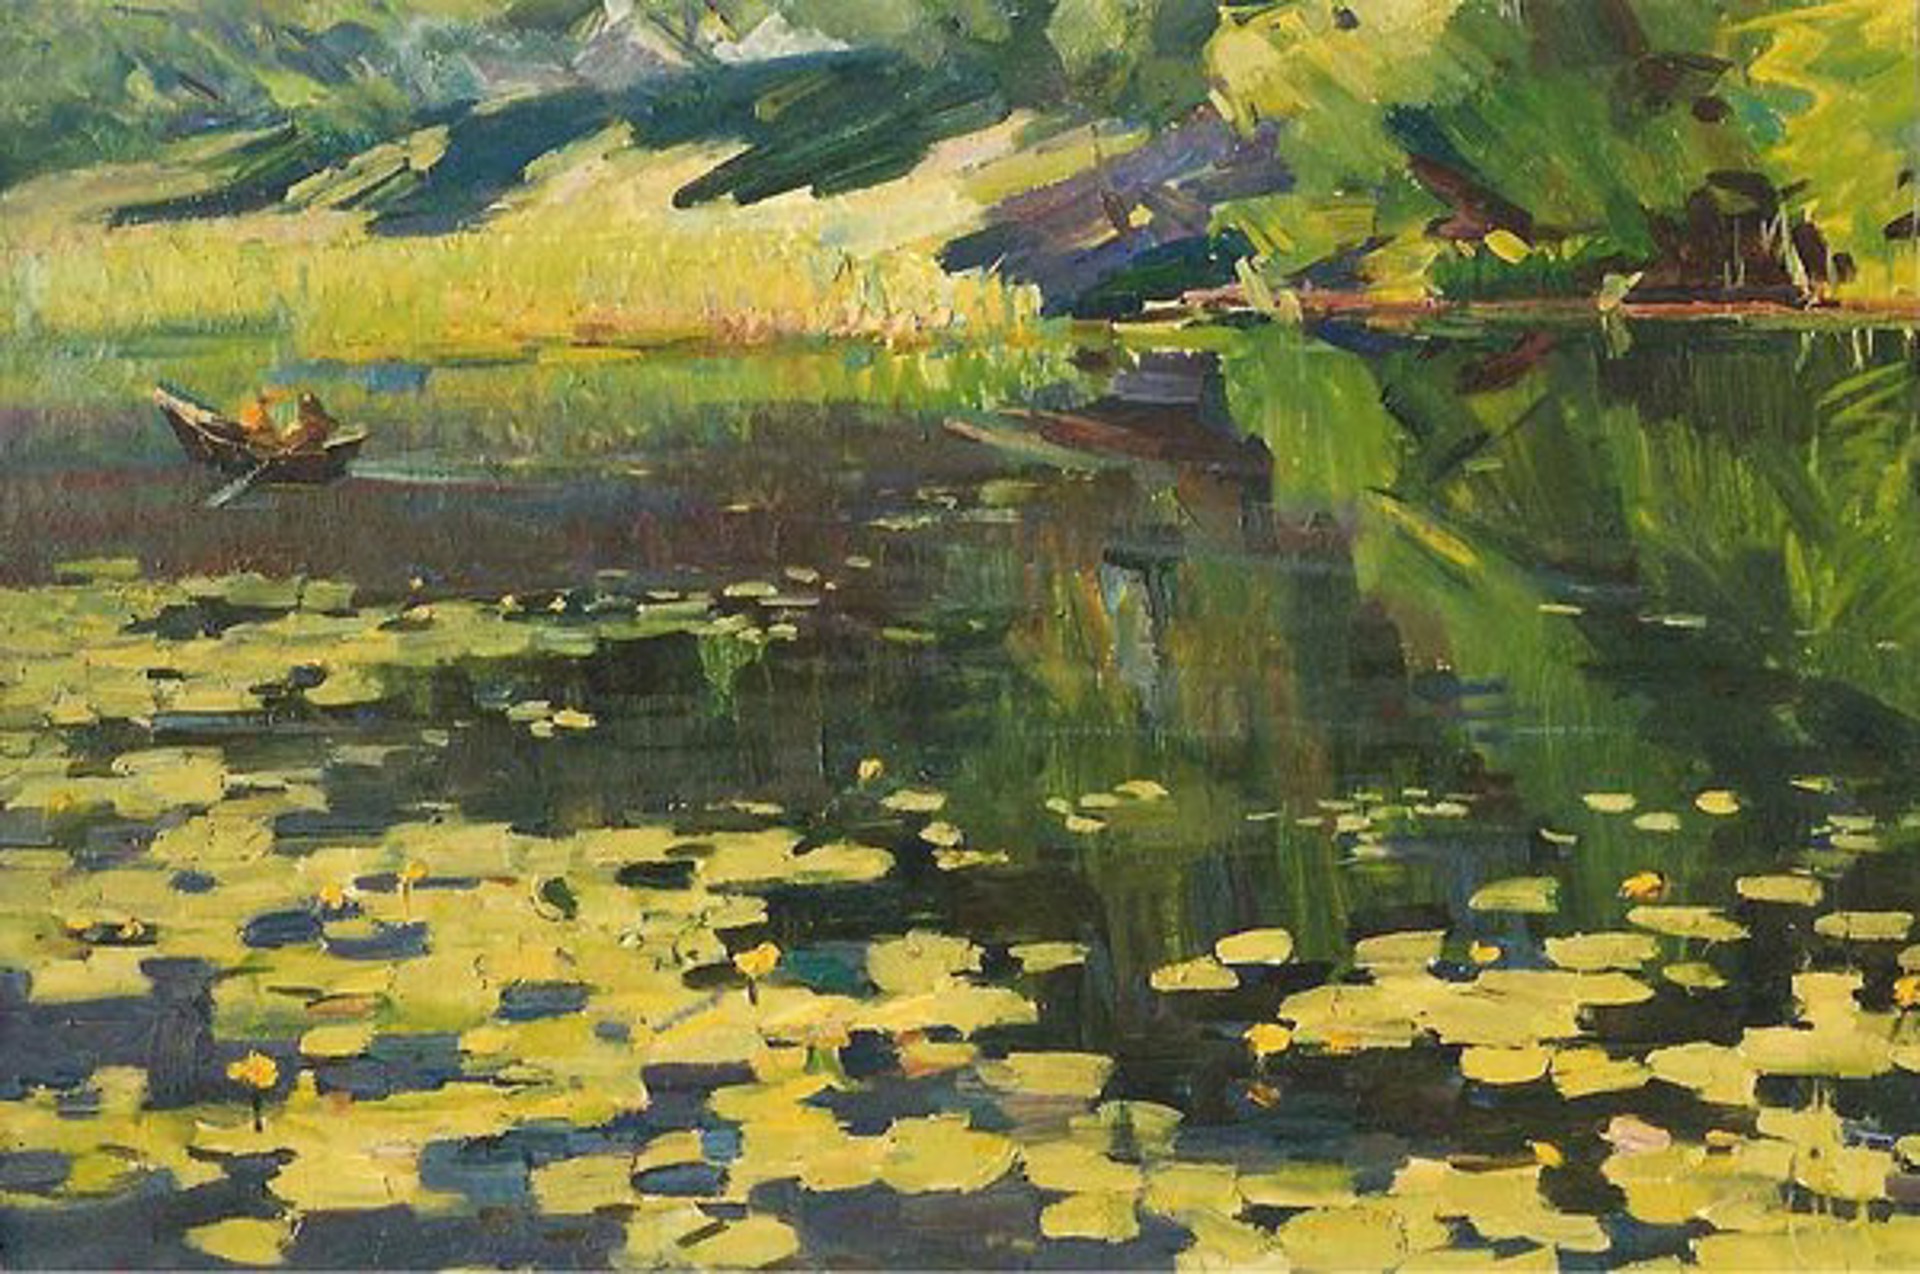 On the Pond by Vasili Kondratuk